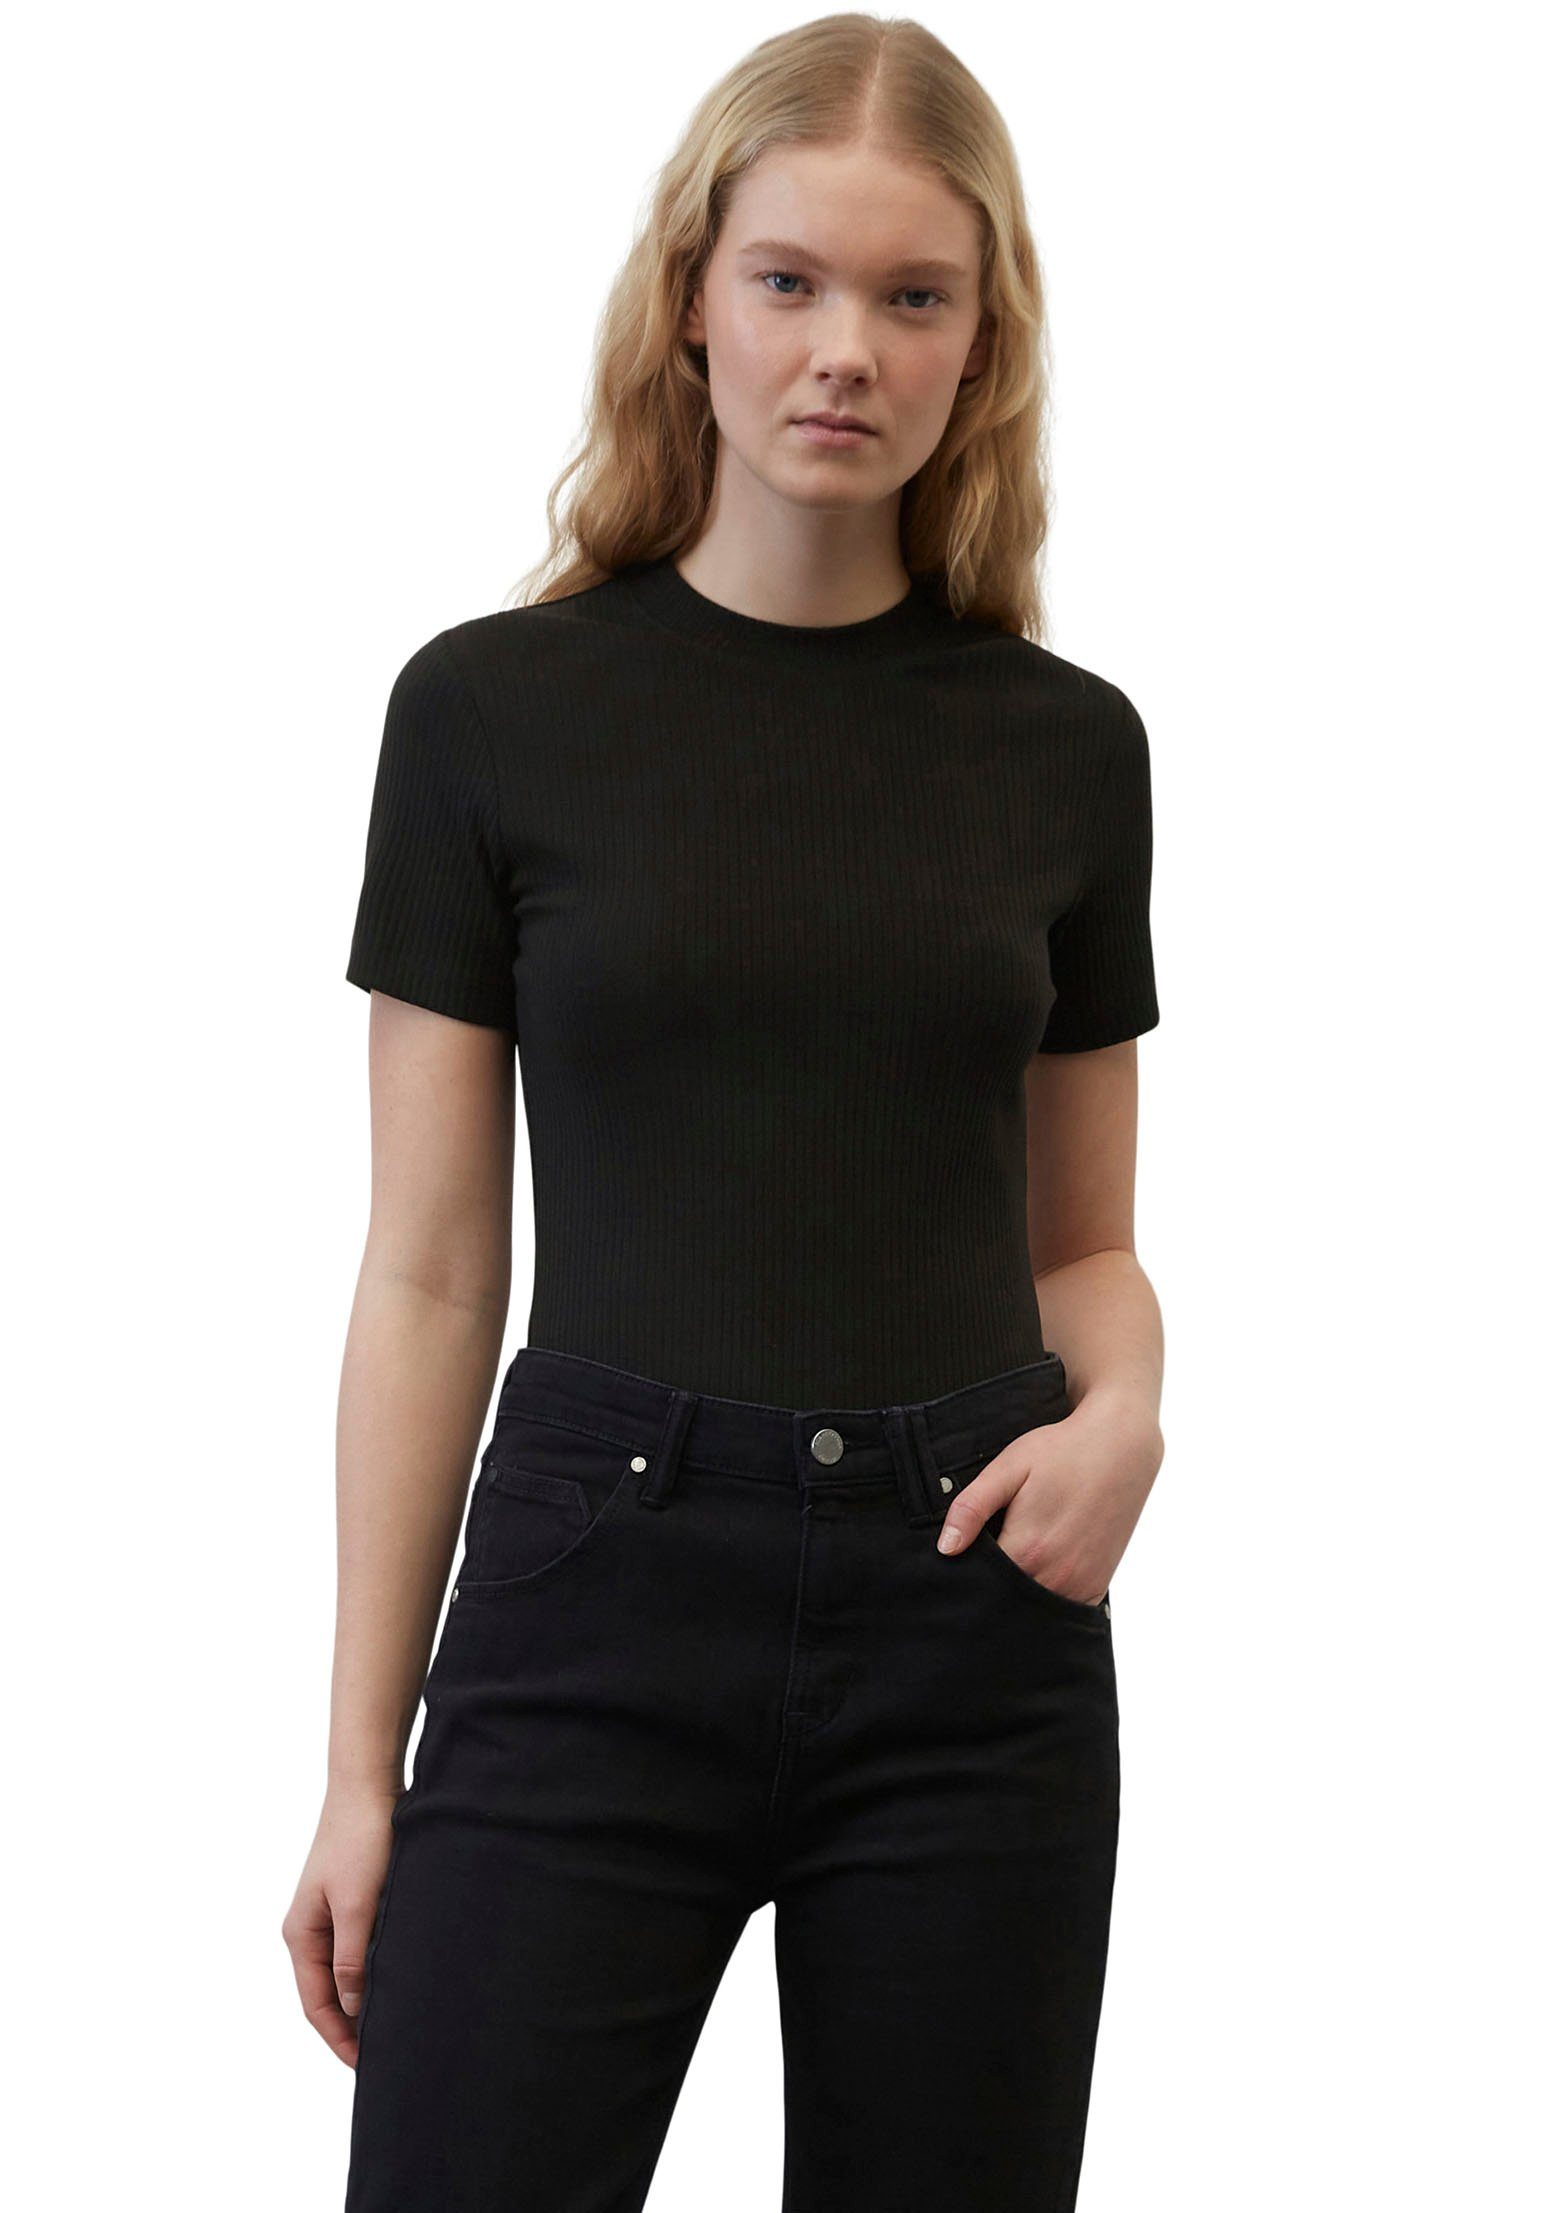 Ausverkauf und kostenloser Versand Marc O'Polo im DENIM Kurzarmshirt schwarz Ripp-Ware formschöner